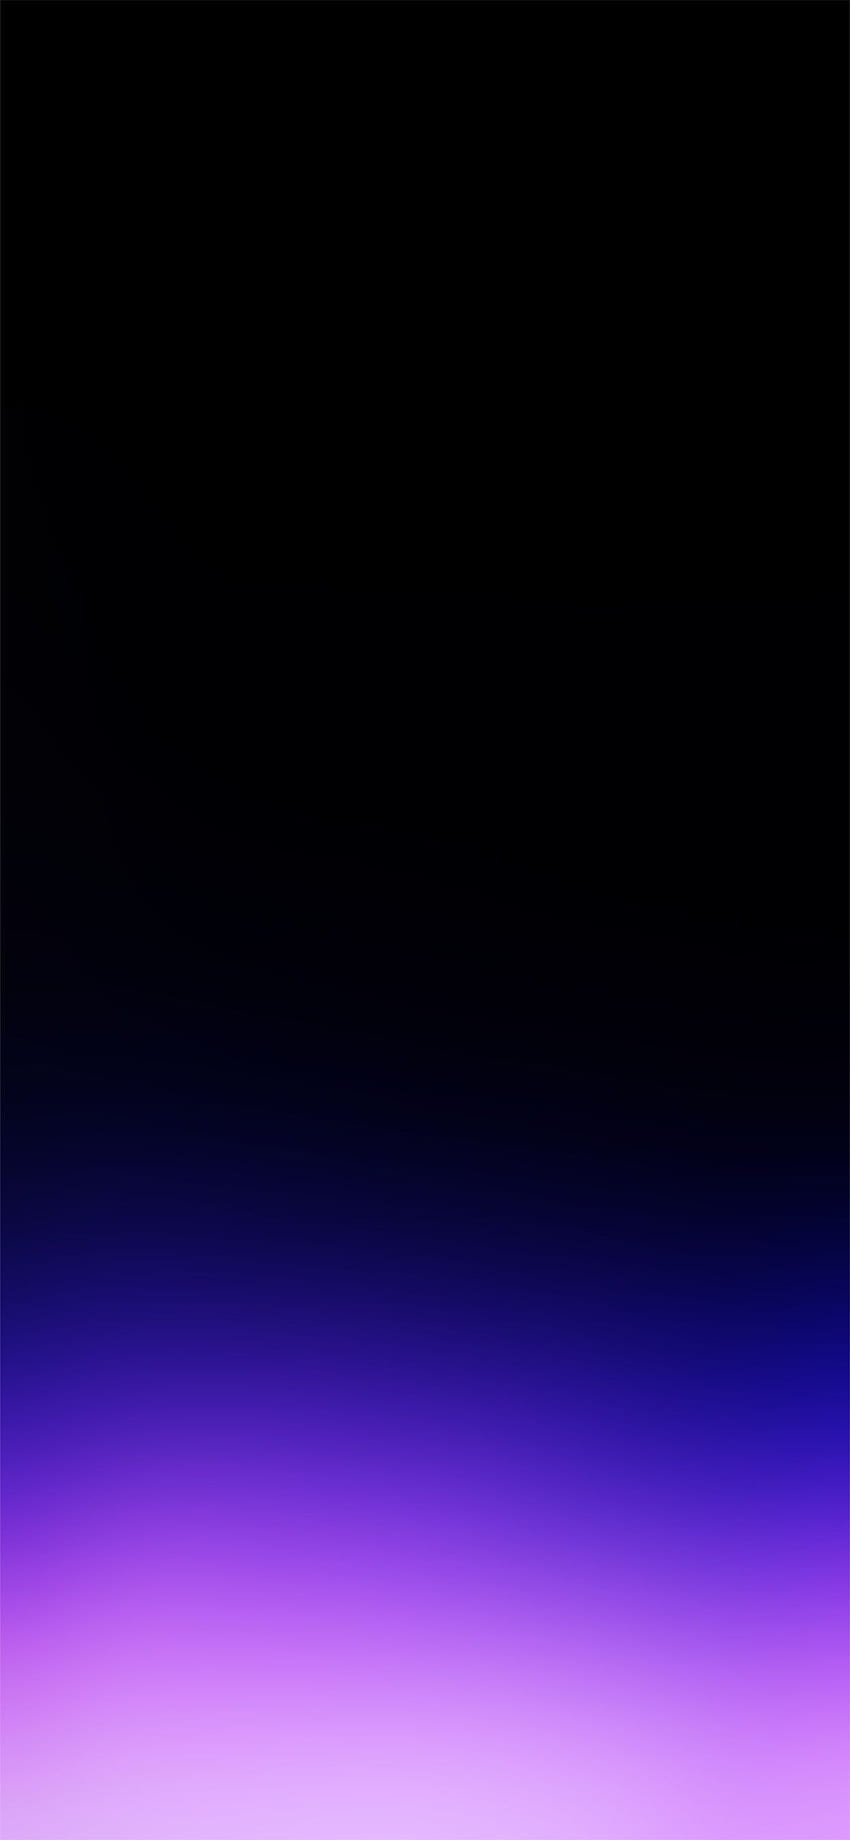 Gradient Tím Đậm iPhone, Đen và Tím HD Điện Thoại - Đừng bỏ lỡ cơ hội để sở hữu Dark Purple Gradient iPhone, Black and Purple Phone HD Phone. Màu tím đậm và đen sang trọng cho bạn những nét đẹp đầy tinh tế và phong cách.